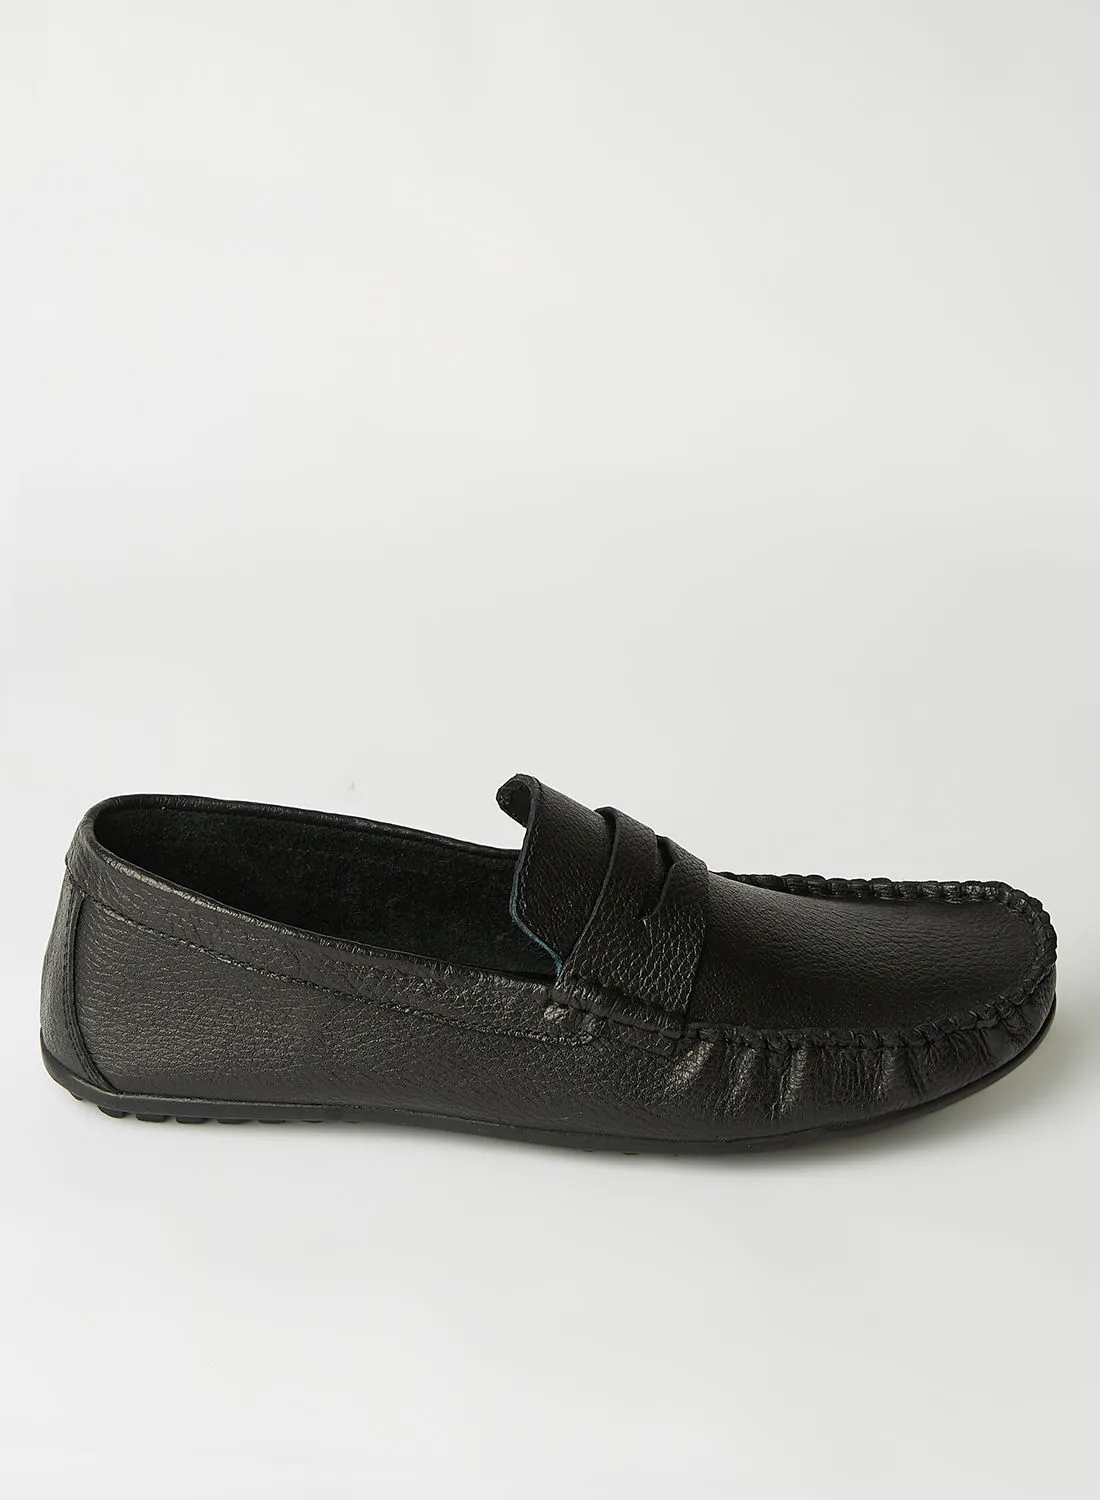 Roadwalker Basic Leather Loafers Black